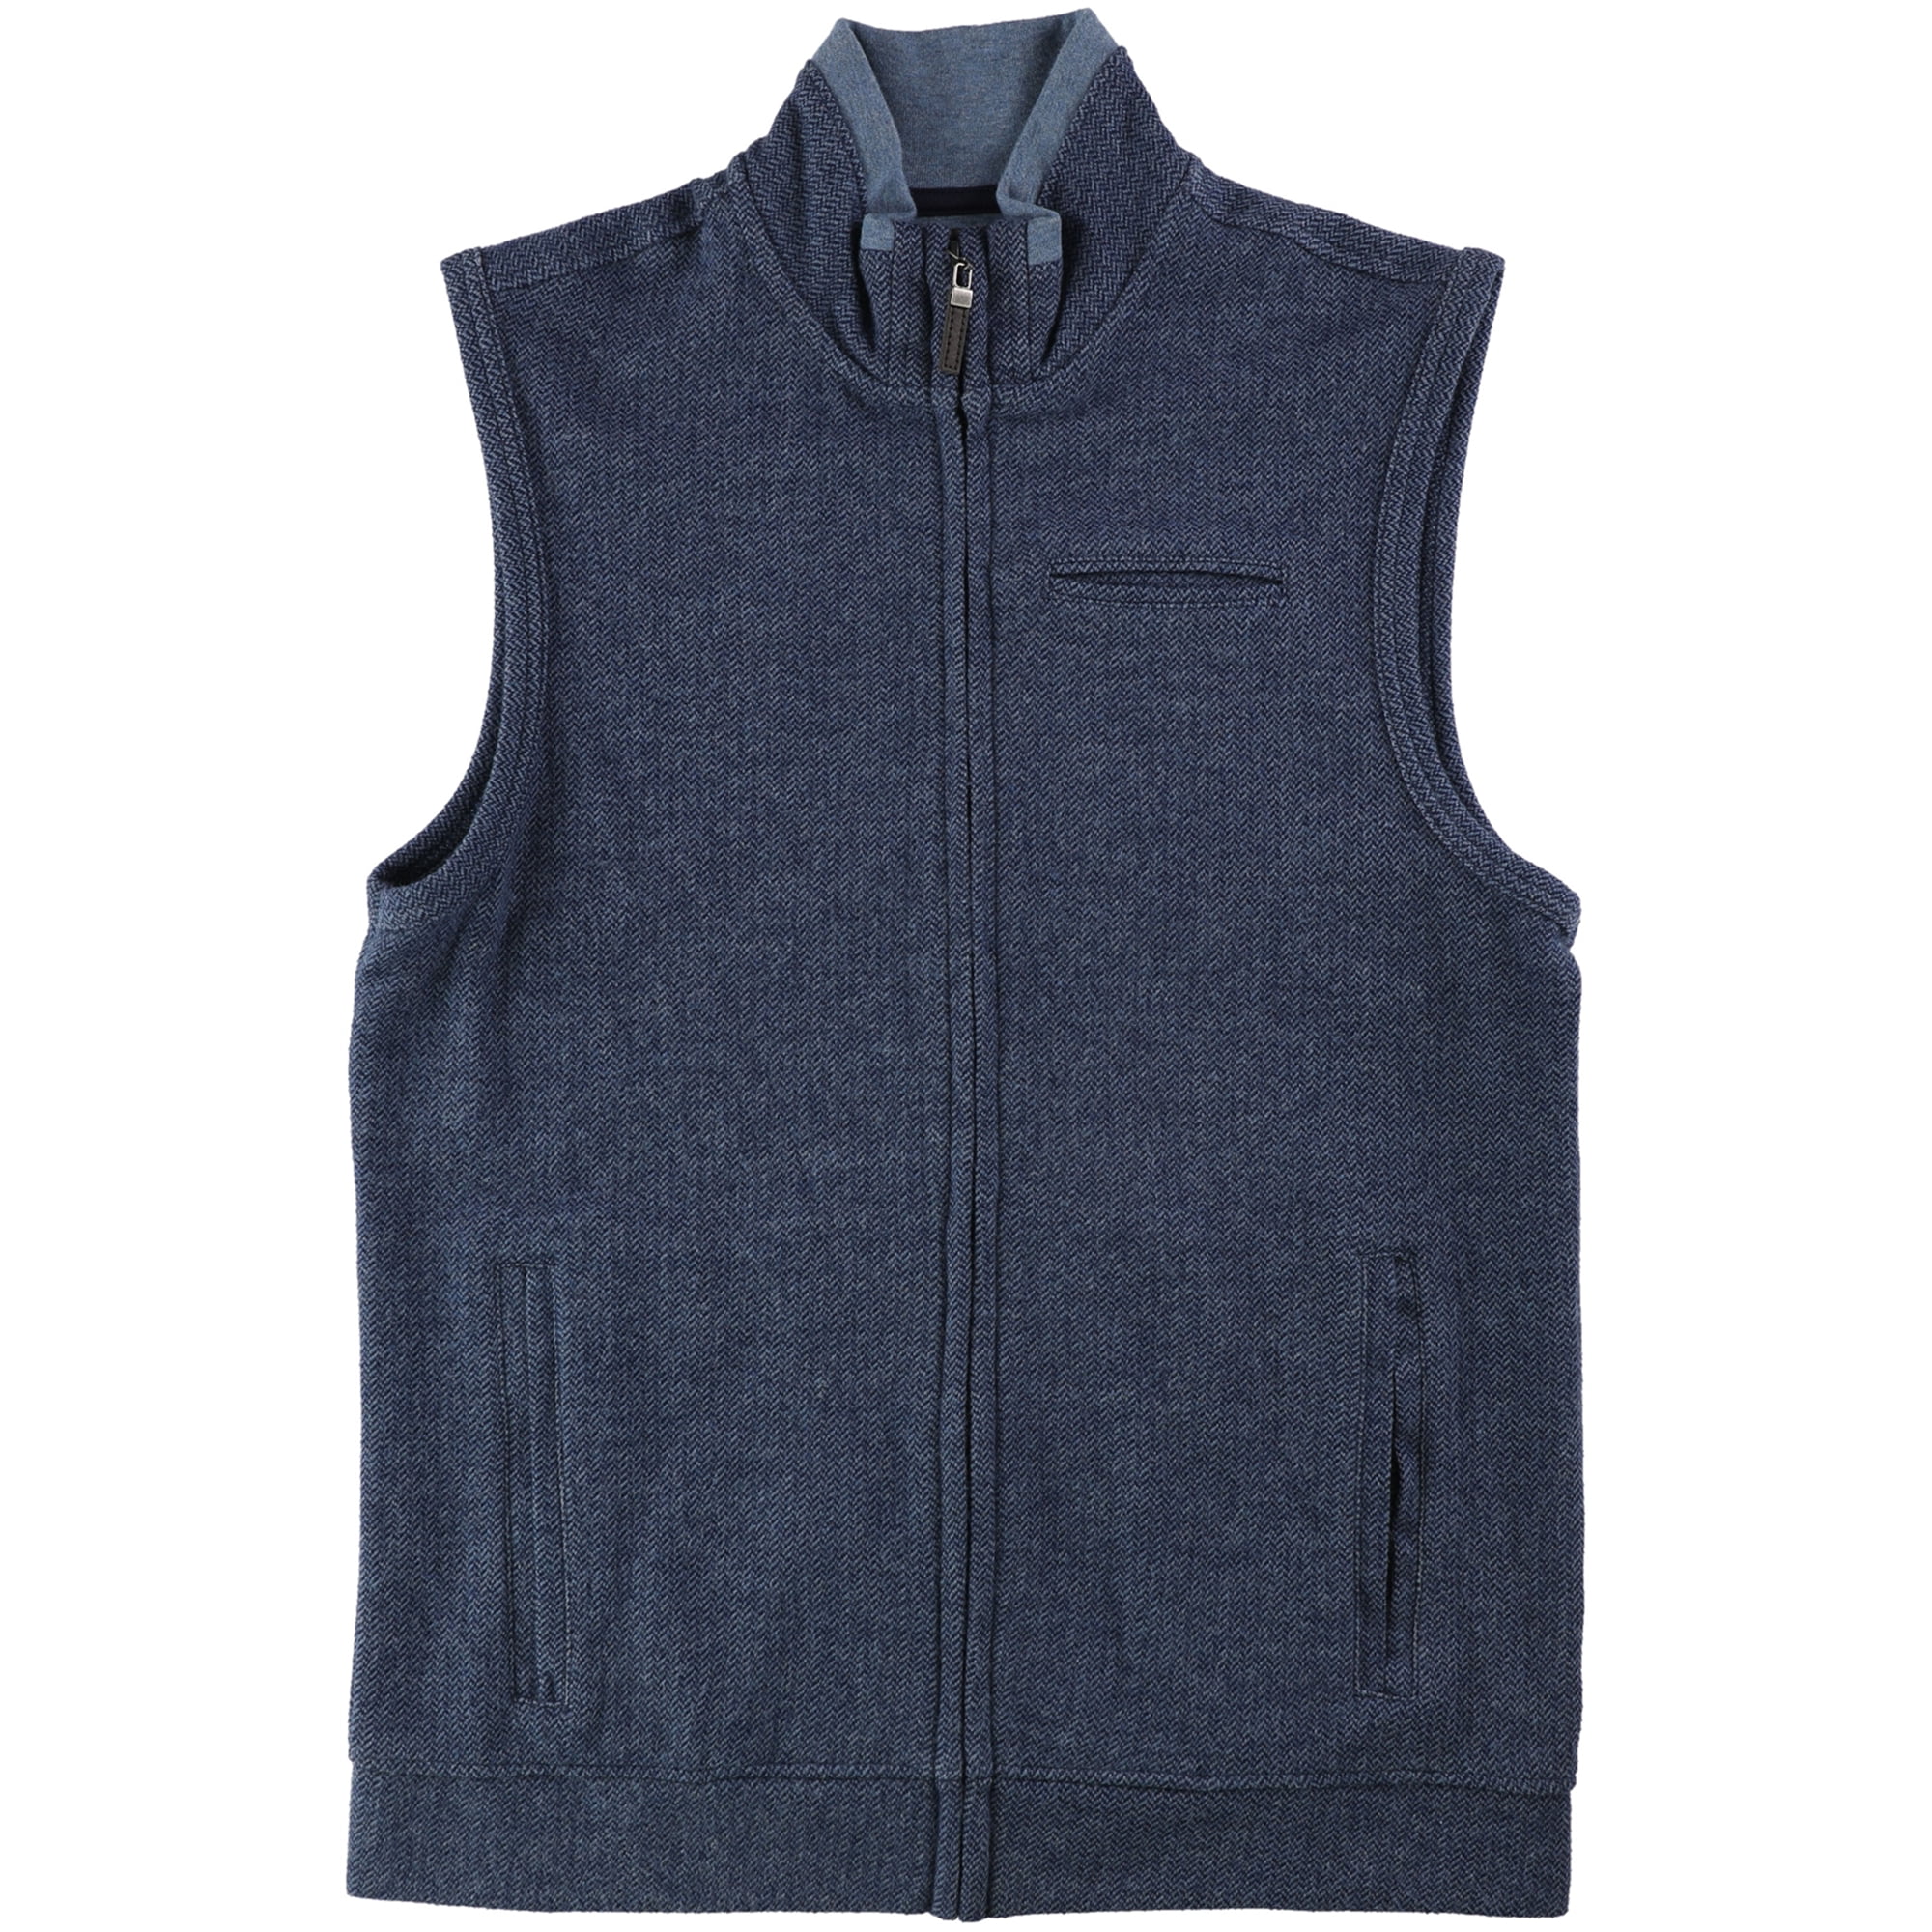 Tasso Elba Mens Full-Zip Pocket Sweater Vest, Blue, Small - Walmart.com